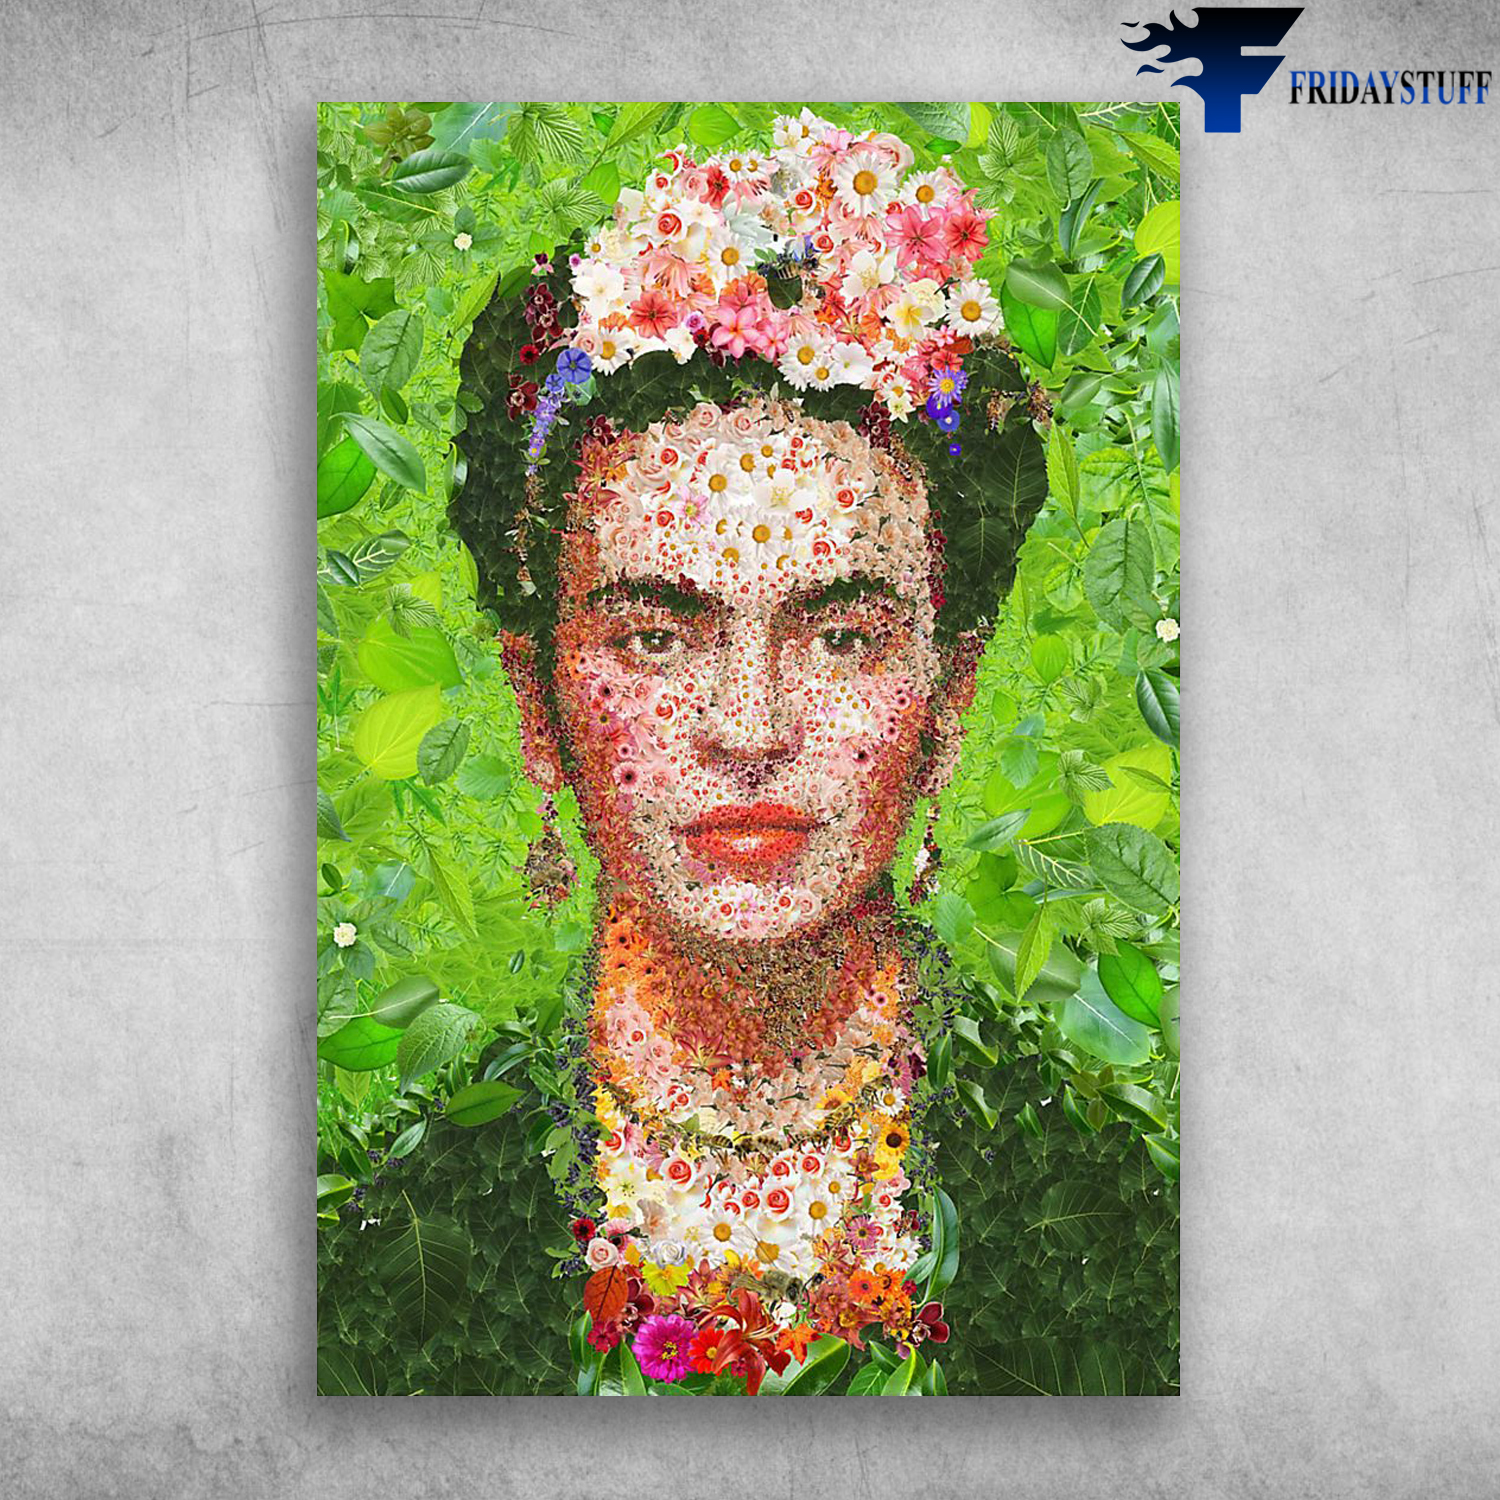 Impressionist Frida Kahlo Art Paintings - FridayStuff